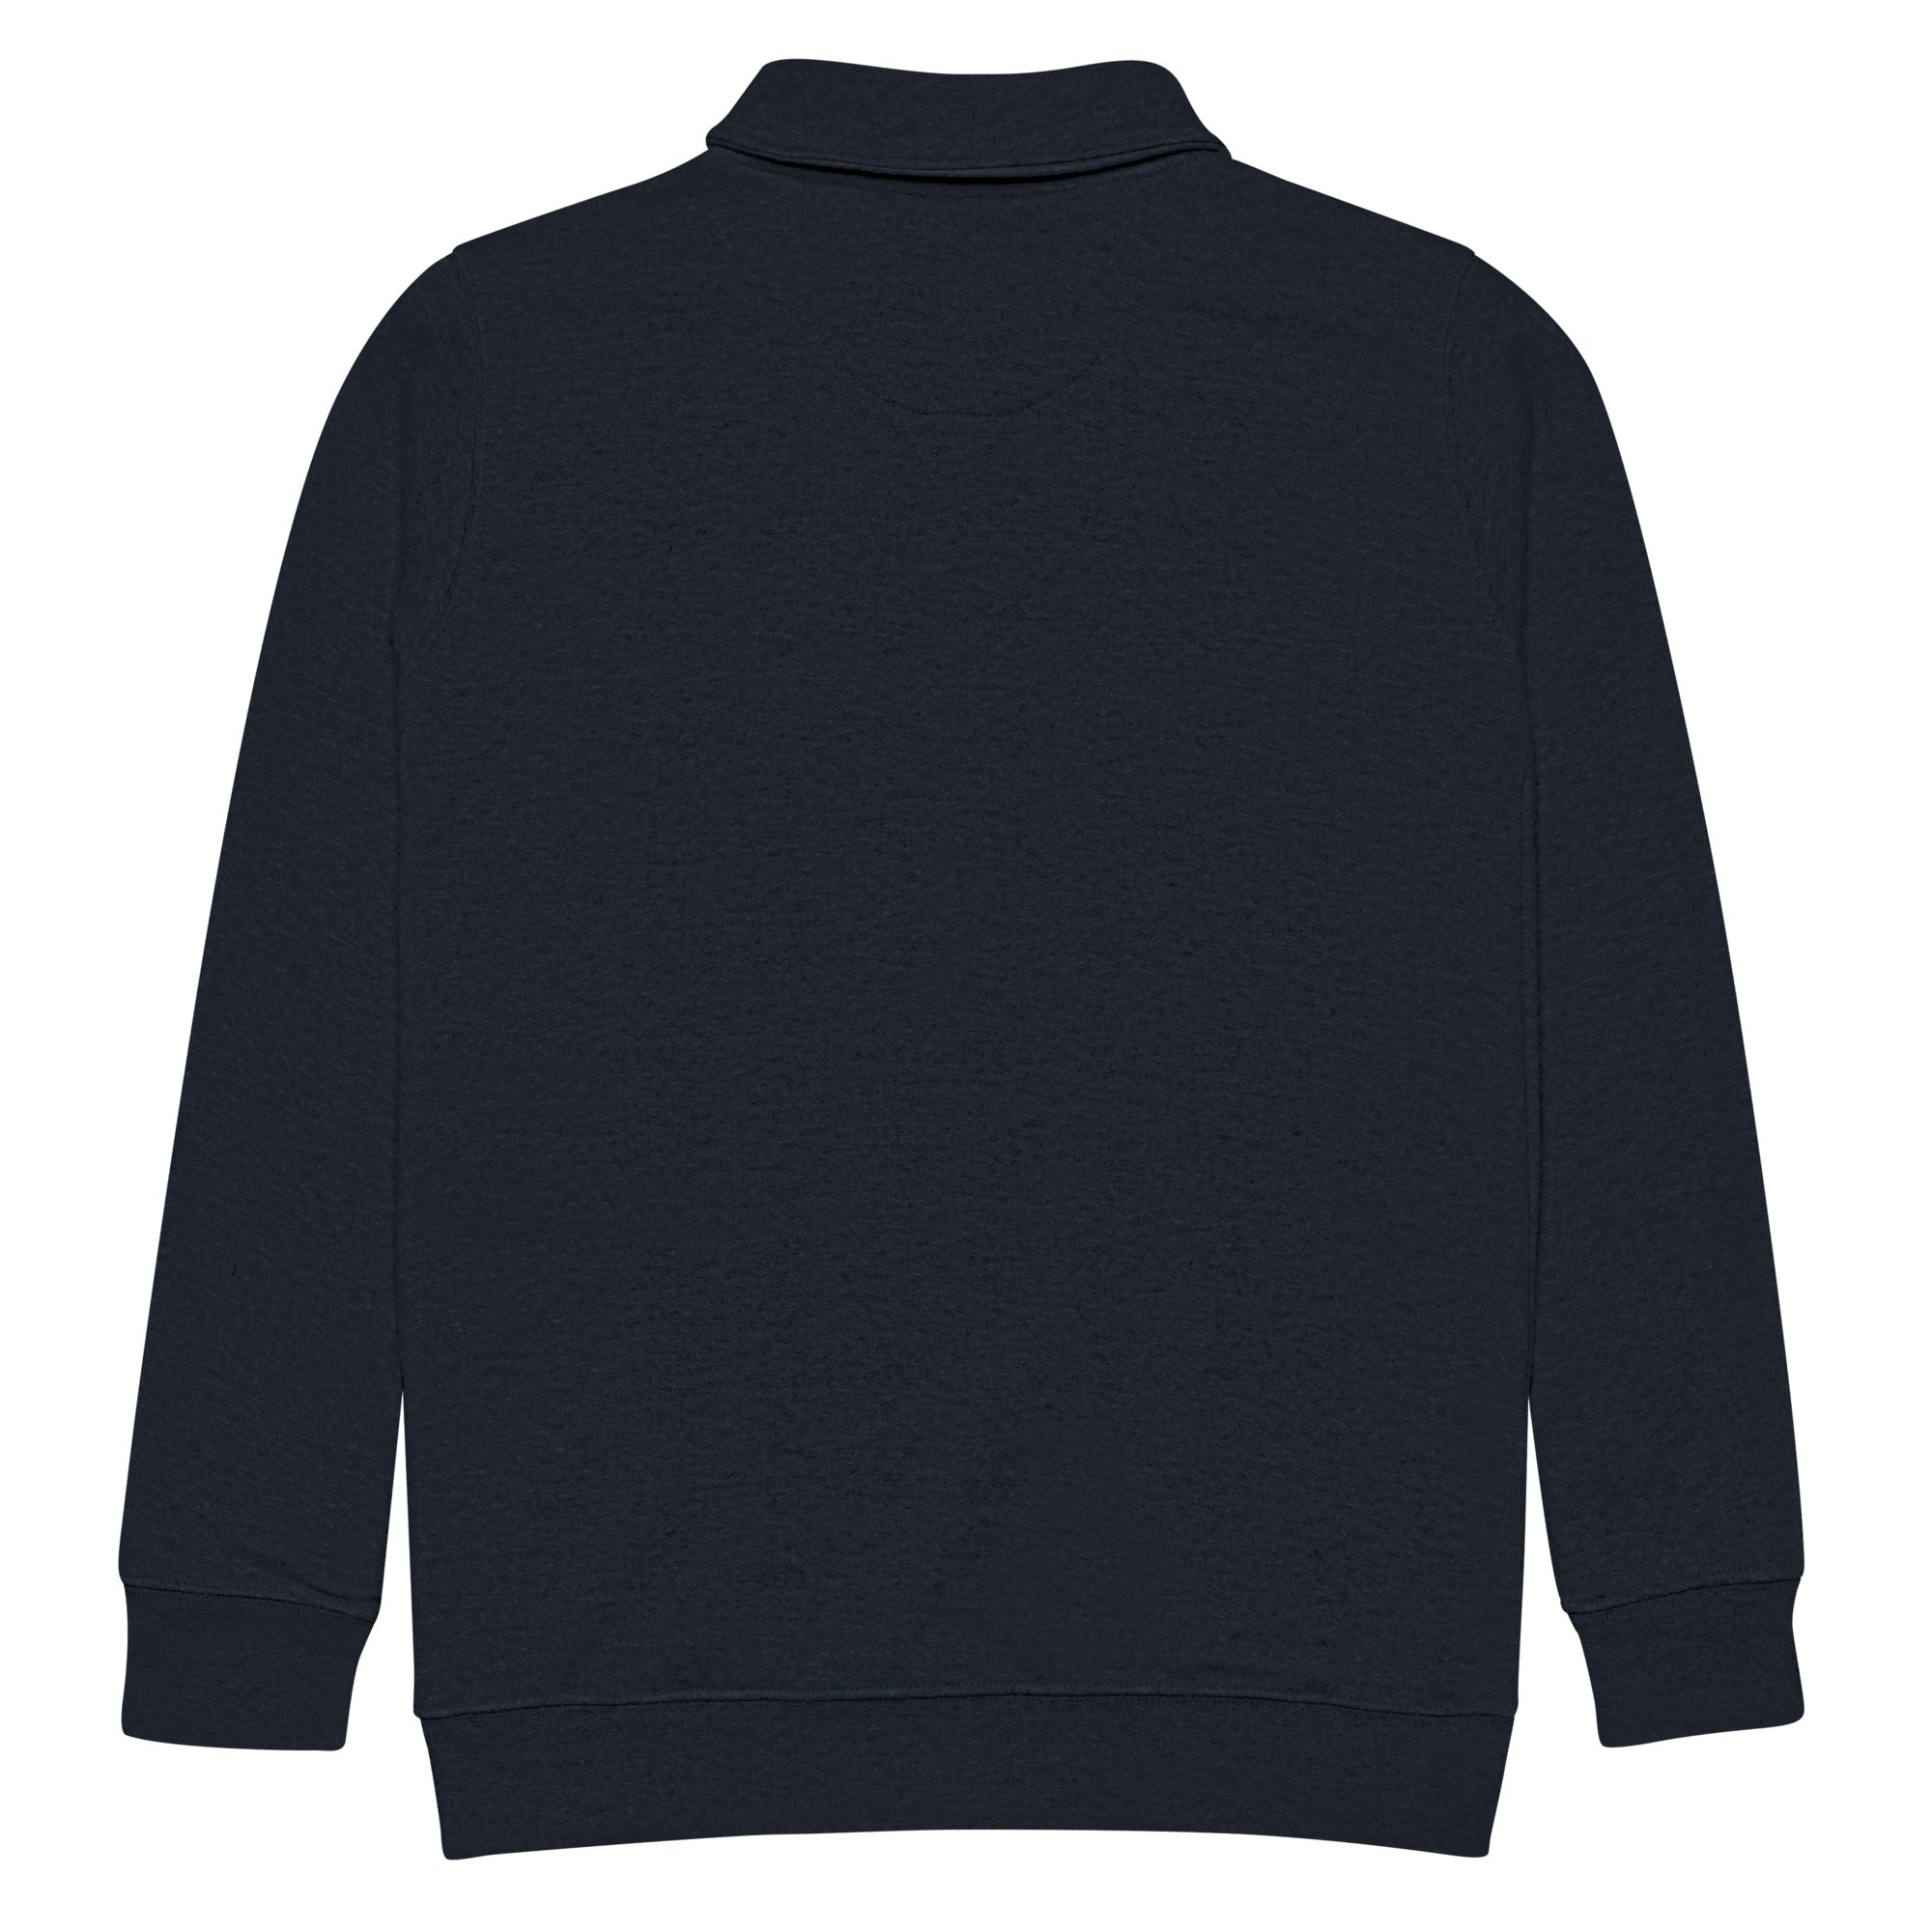 Unisex Billy Gear fleece pullover